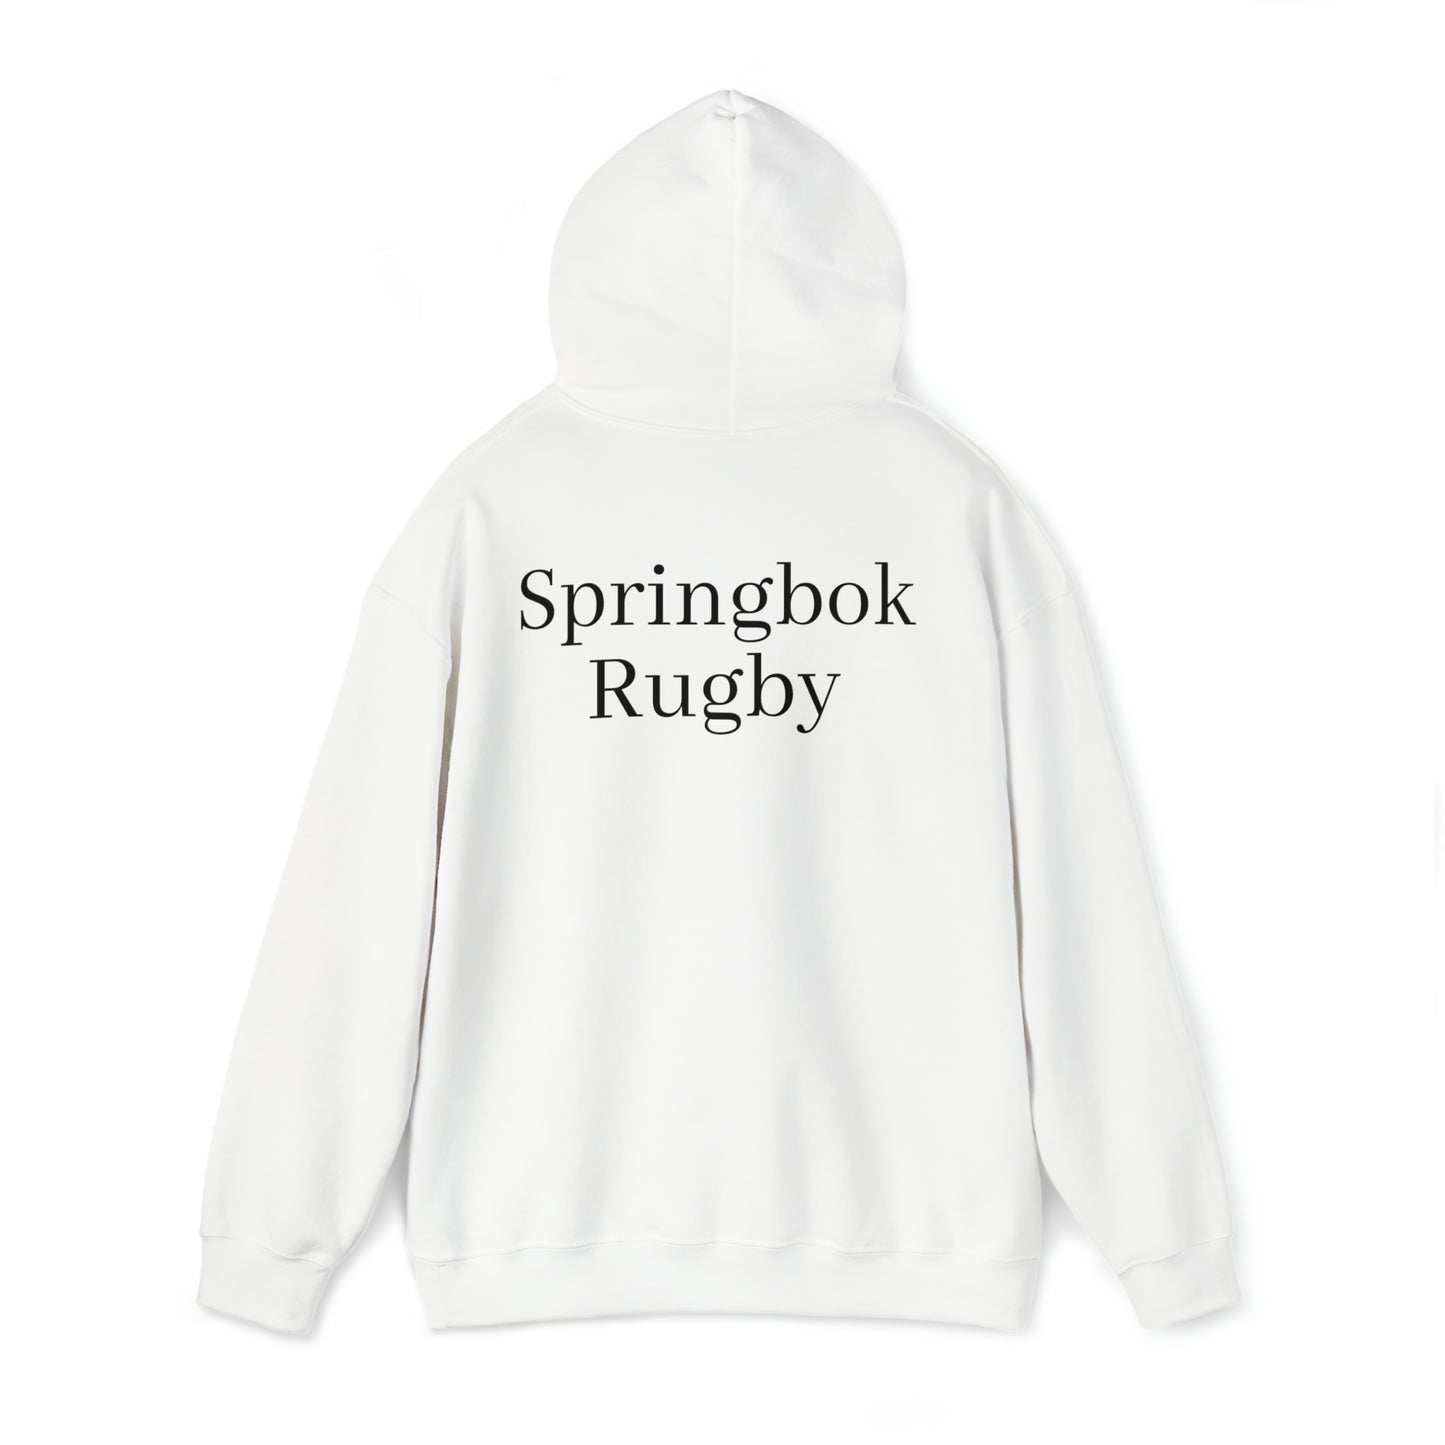 Springboks Team Photo - light hoodies